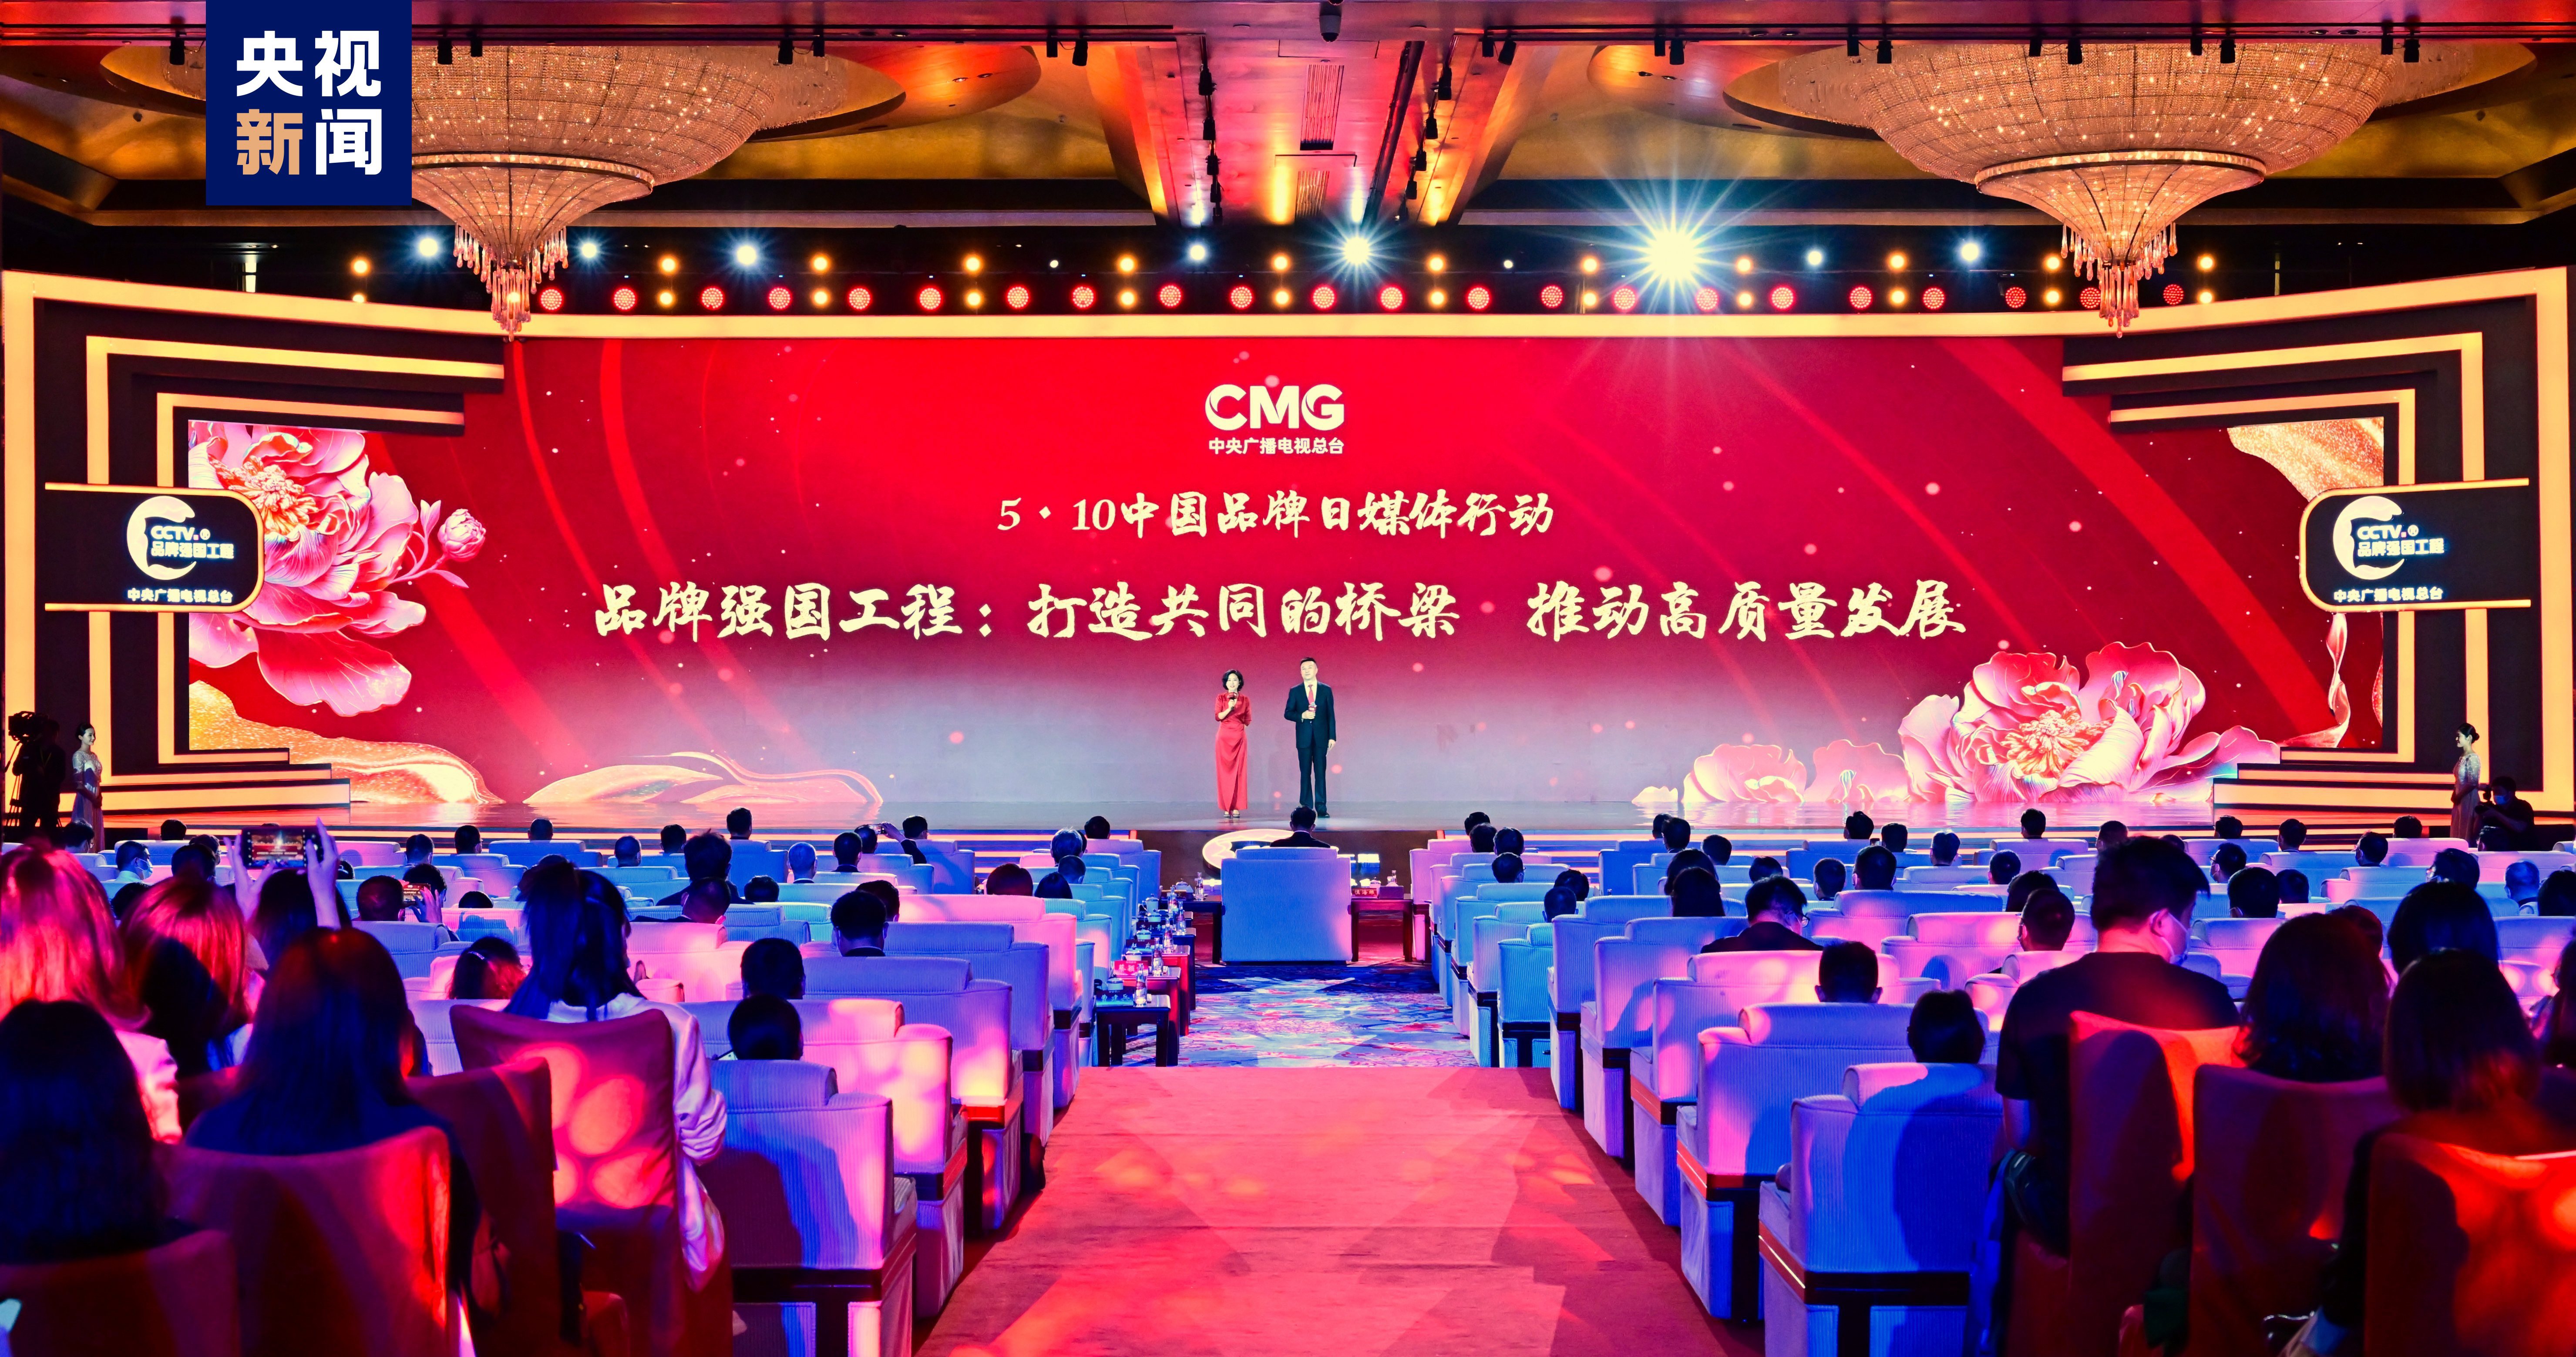 برگزاری «رویداد رسانه ای روز برند چین 5.10» از سوی رادیو و تلویزیون مرکزی چینا